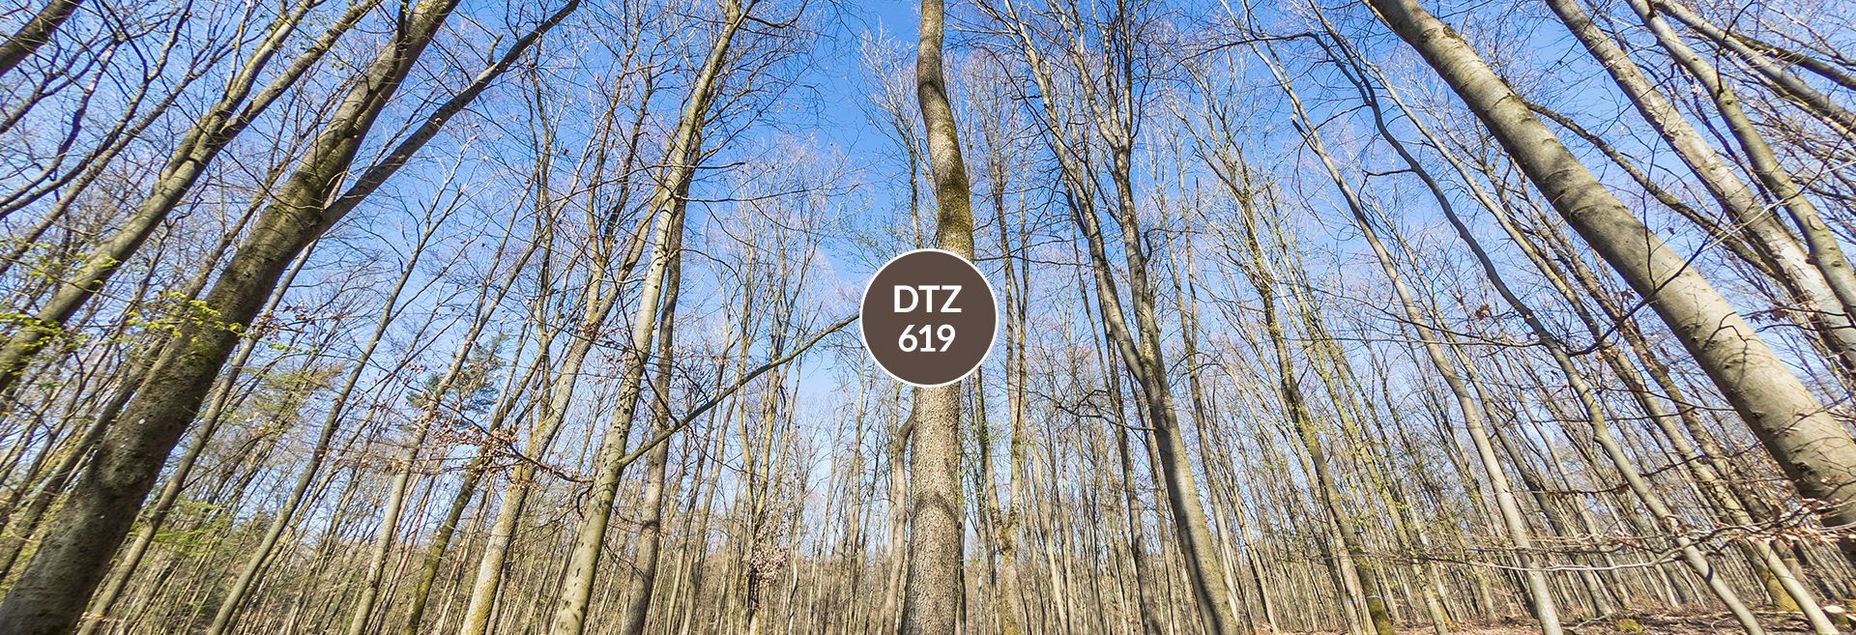 DTZ 619 - Baum